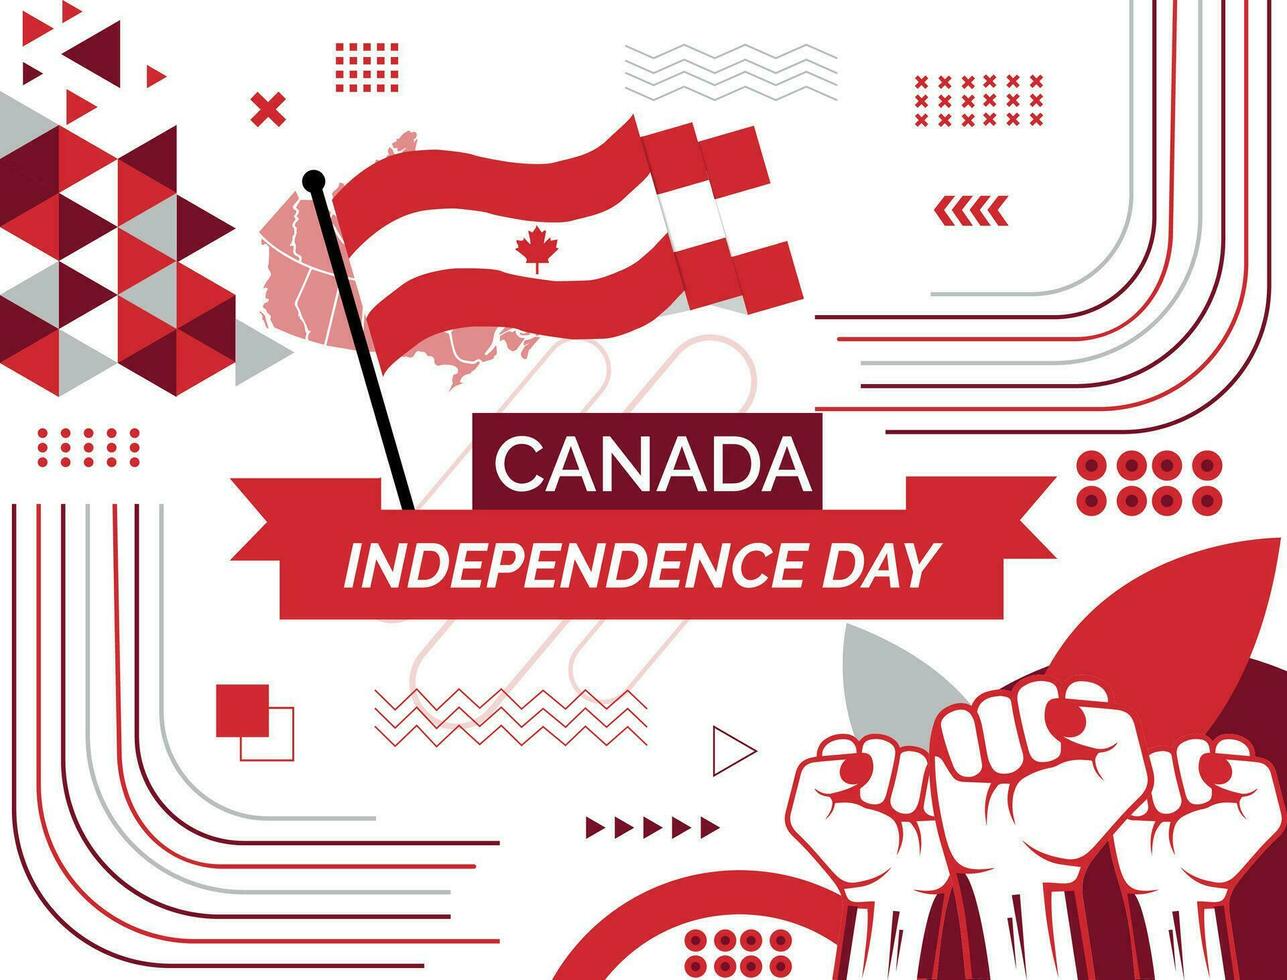 Kanada Karte und angehoben Fäuste. National Tag oder Unabhängigkeit Tag Design zum Kanada Feier. modern retro Design mit abstrakt Symbole. Vektor Illustration.